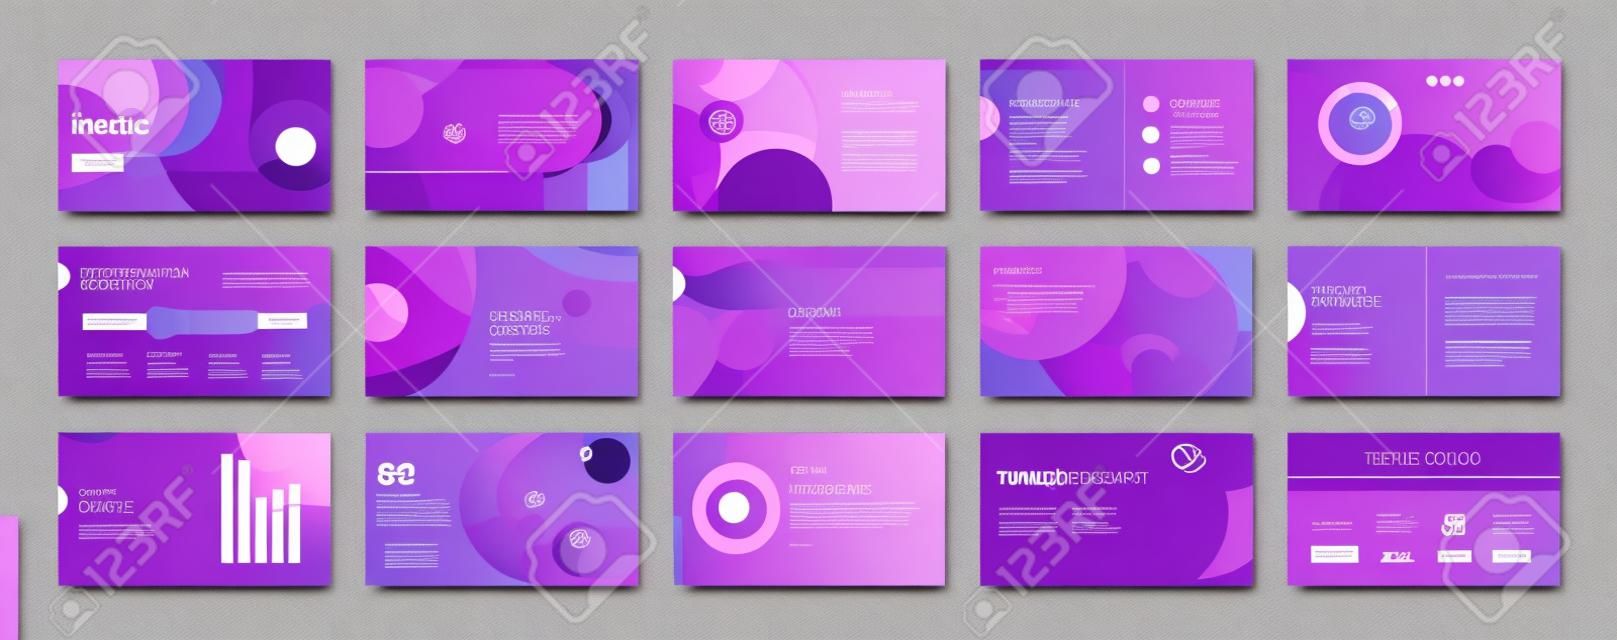 Geometric Purple Presentation Element Templates. Vector infographics. Voor gebruik in Presentatie, Flyer en Folder, SEO, Marketing, Webinar Landing Page Template, Website Design, Banner.